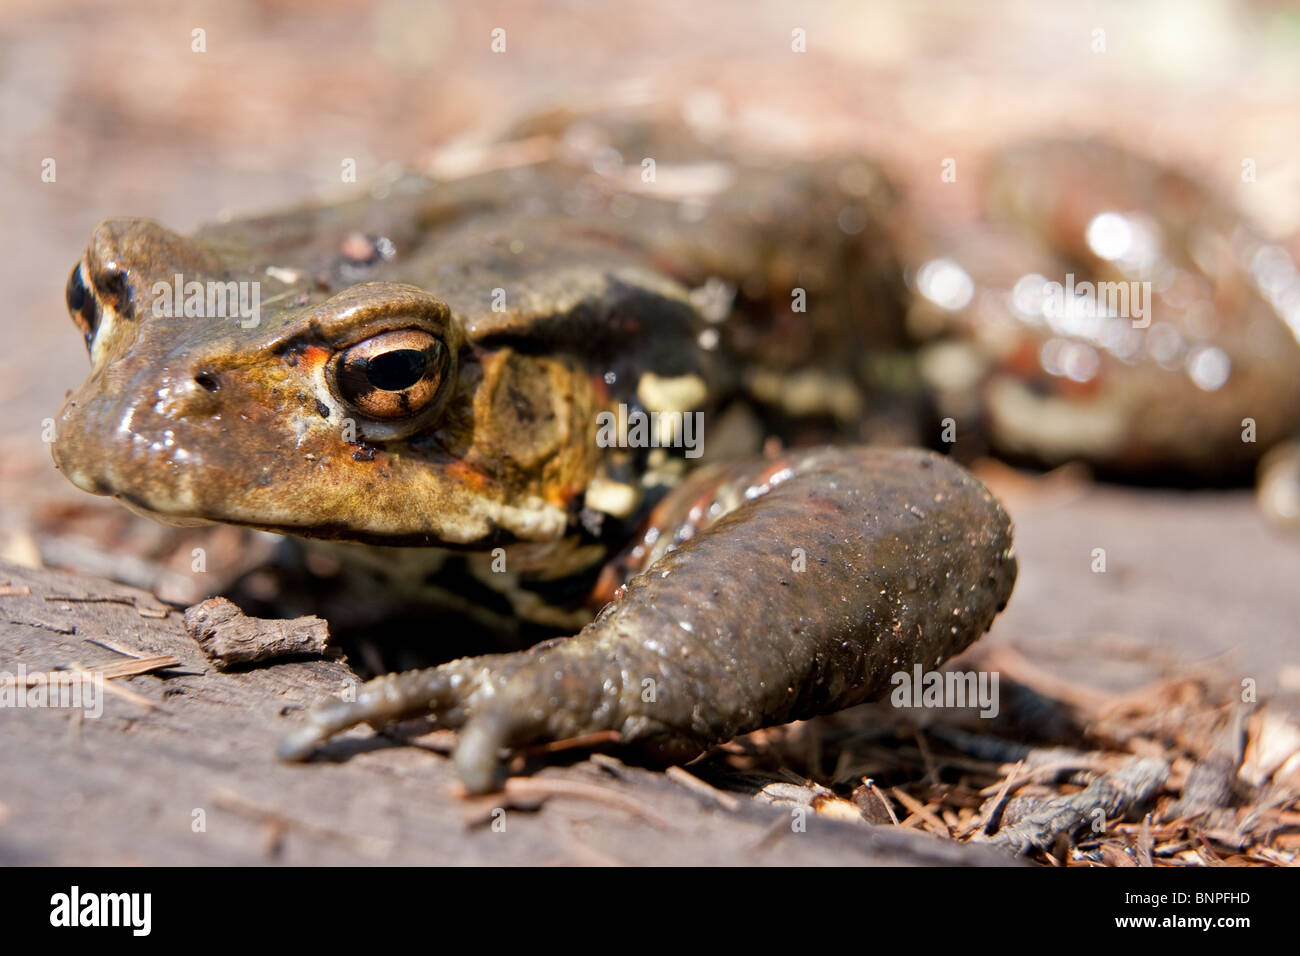 Gemeinsamen Kröte (Bufo Bufo) Makro Fotobild. Diese Amphibien Kreatur entdeckte man natürlicherweise in Natur rund um die Seen von Japan Stockfoto